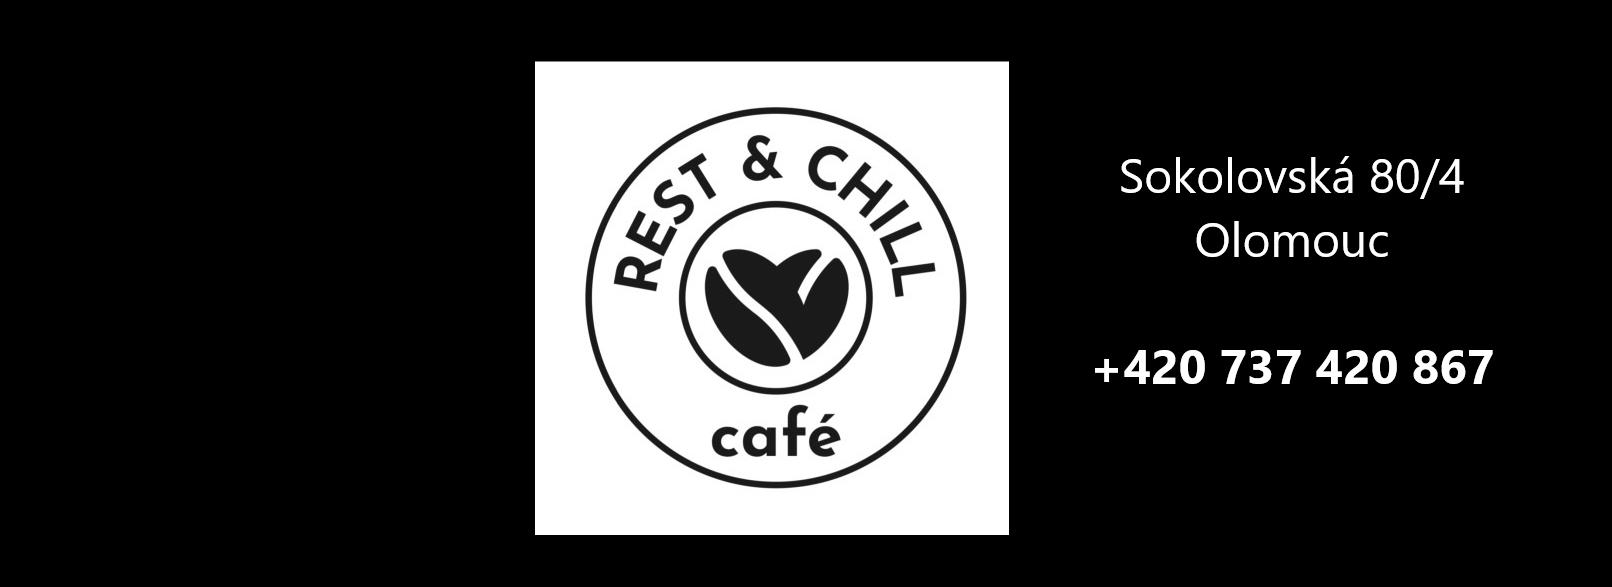 Rest & Chill Café